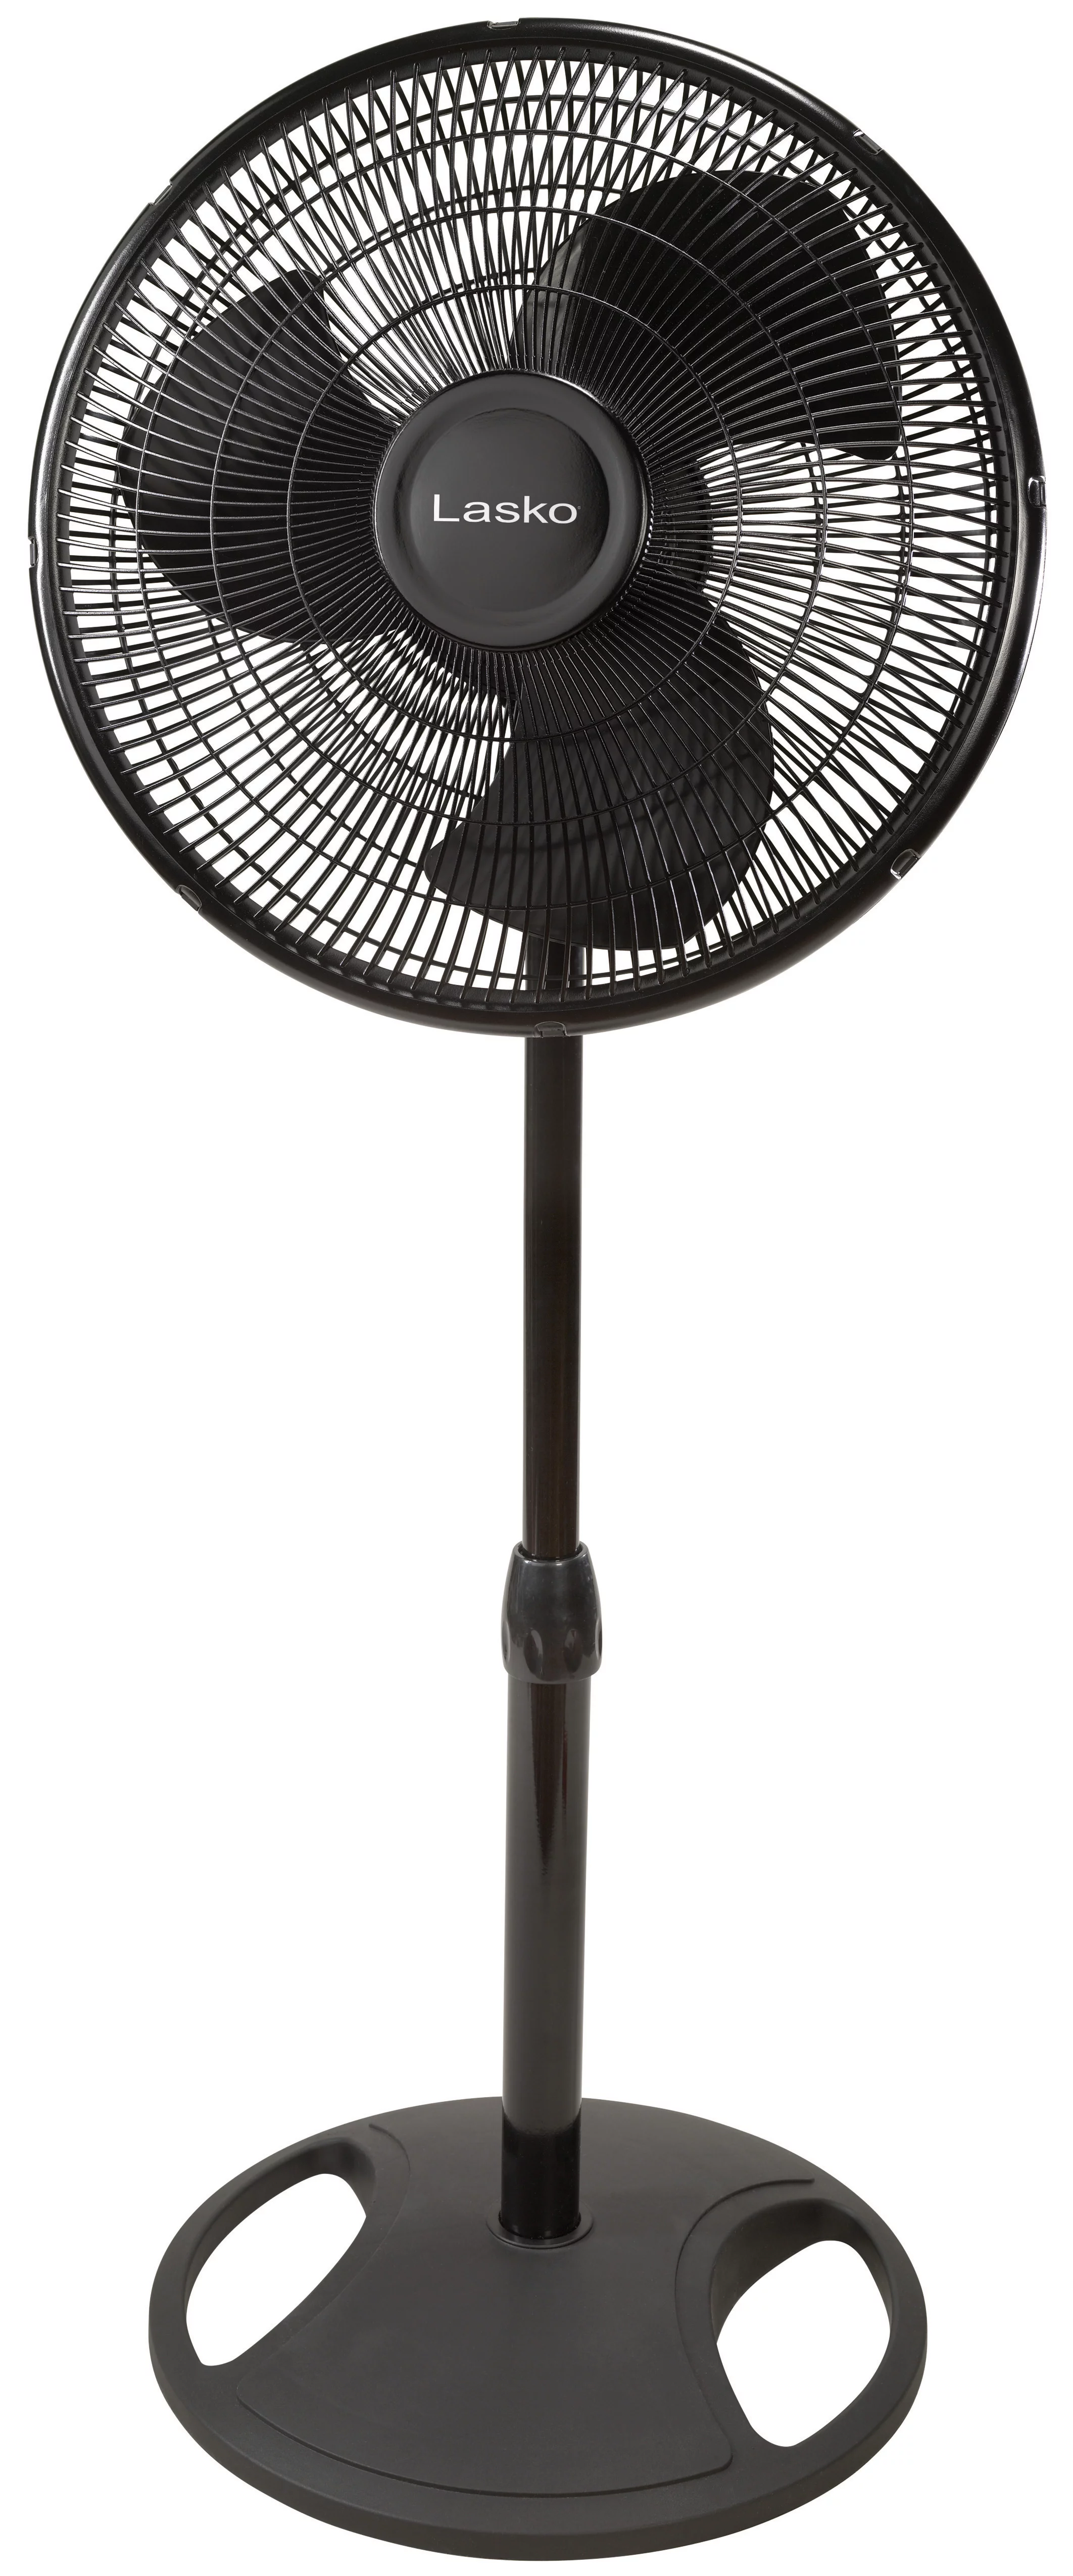 Lasko 16" Oscillating Pedestal Stand 3-Speed Fan, Model S16500, Black